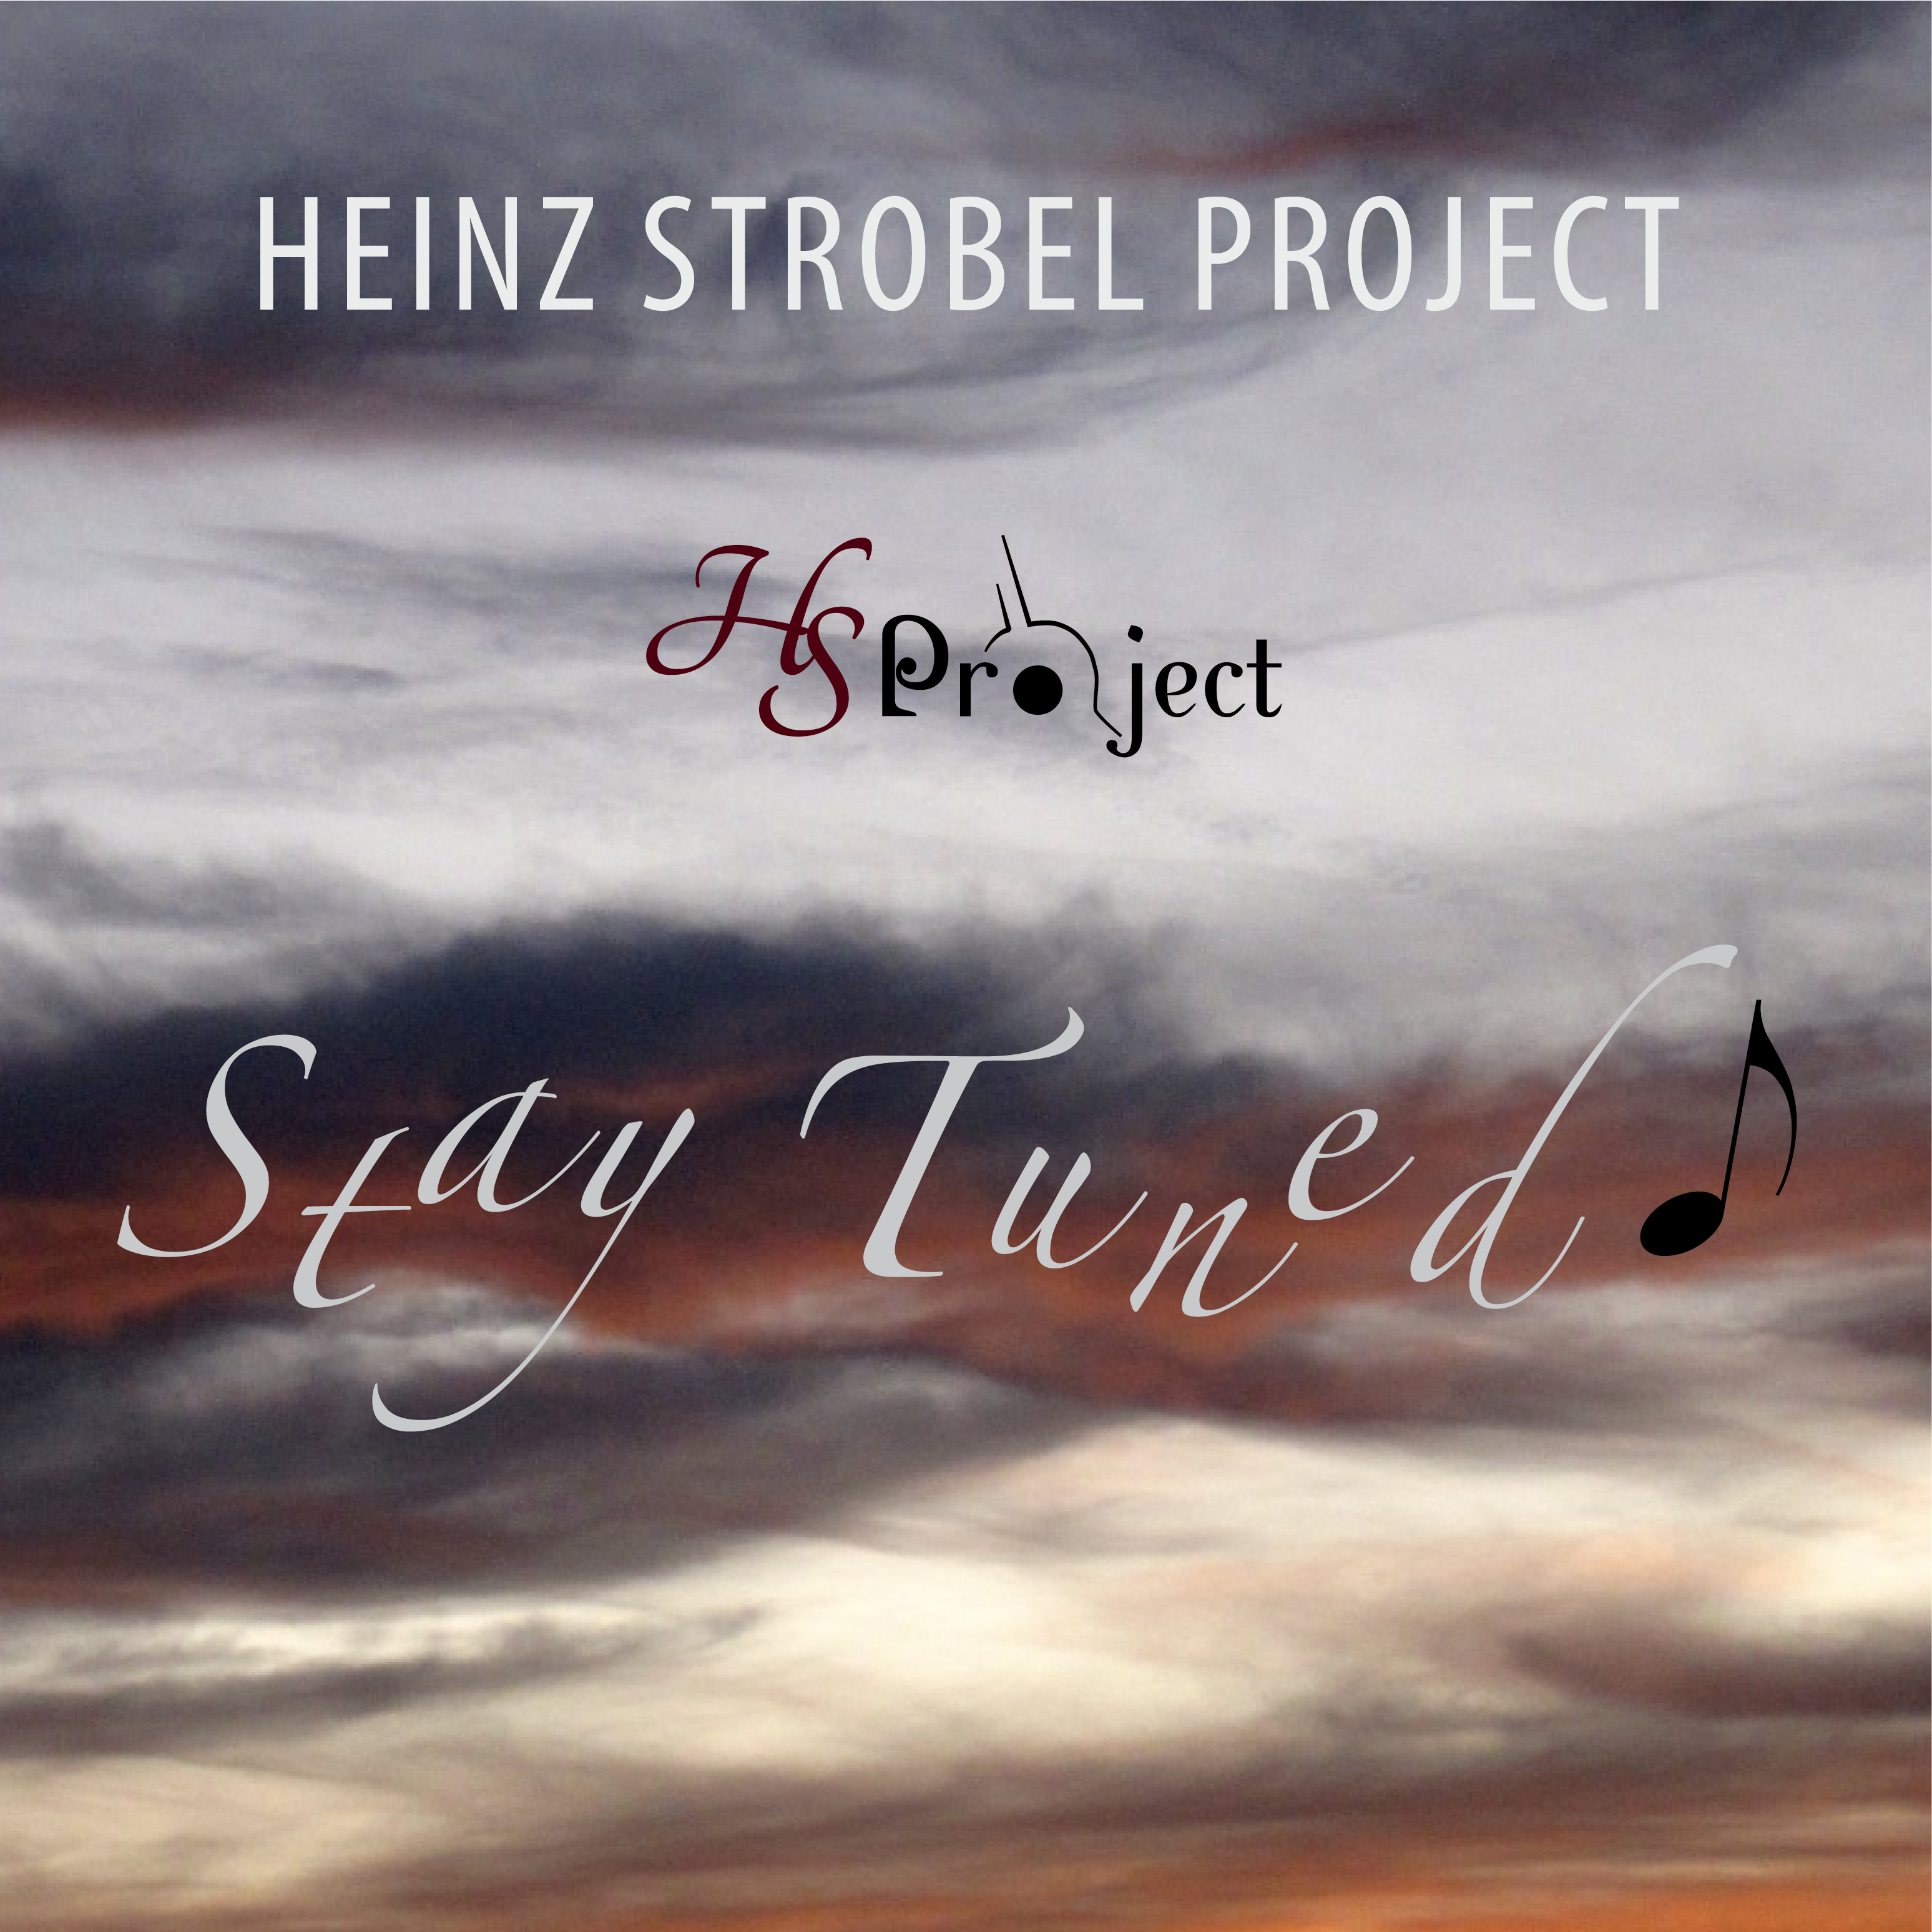 Heinz Strobel Project 